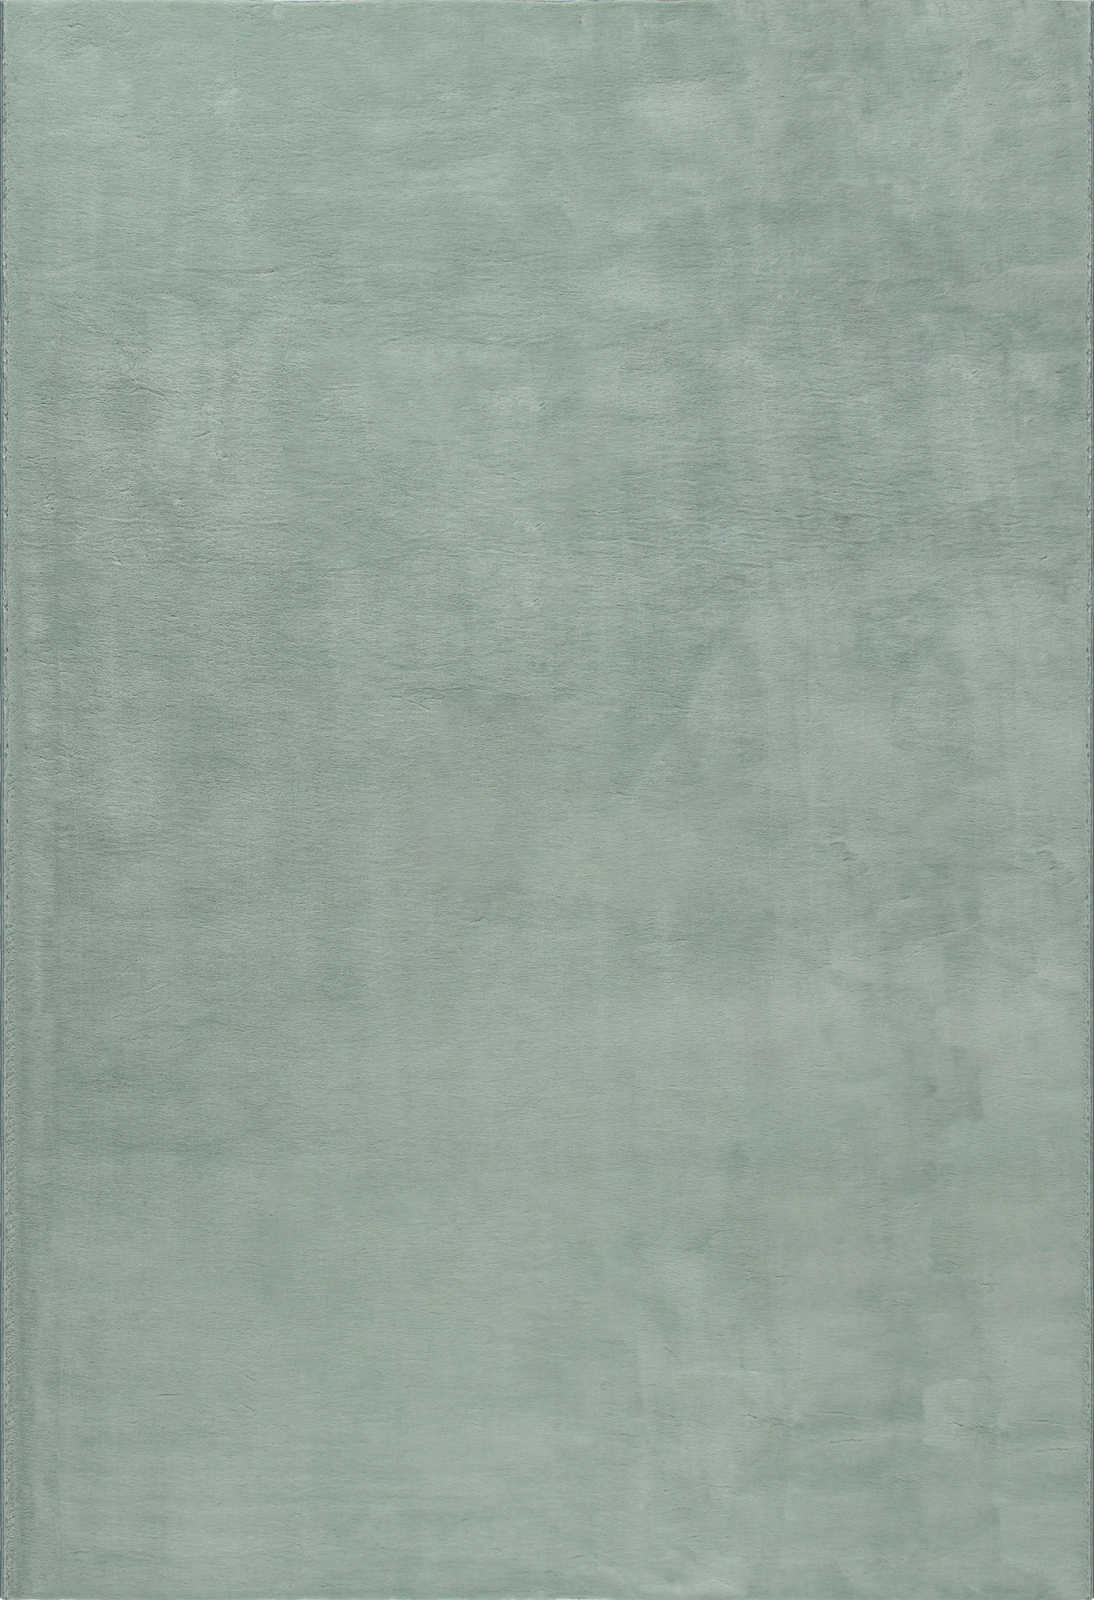             Weicher Hochflor Teppich in sanften Grün – 170 x 120 cm
        